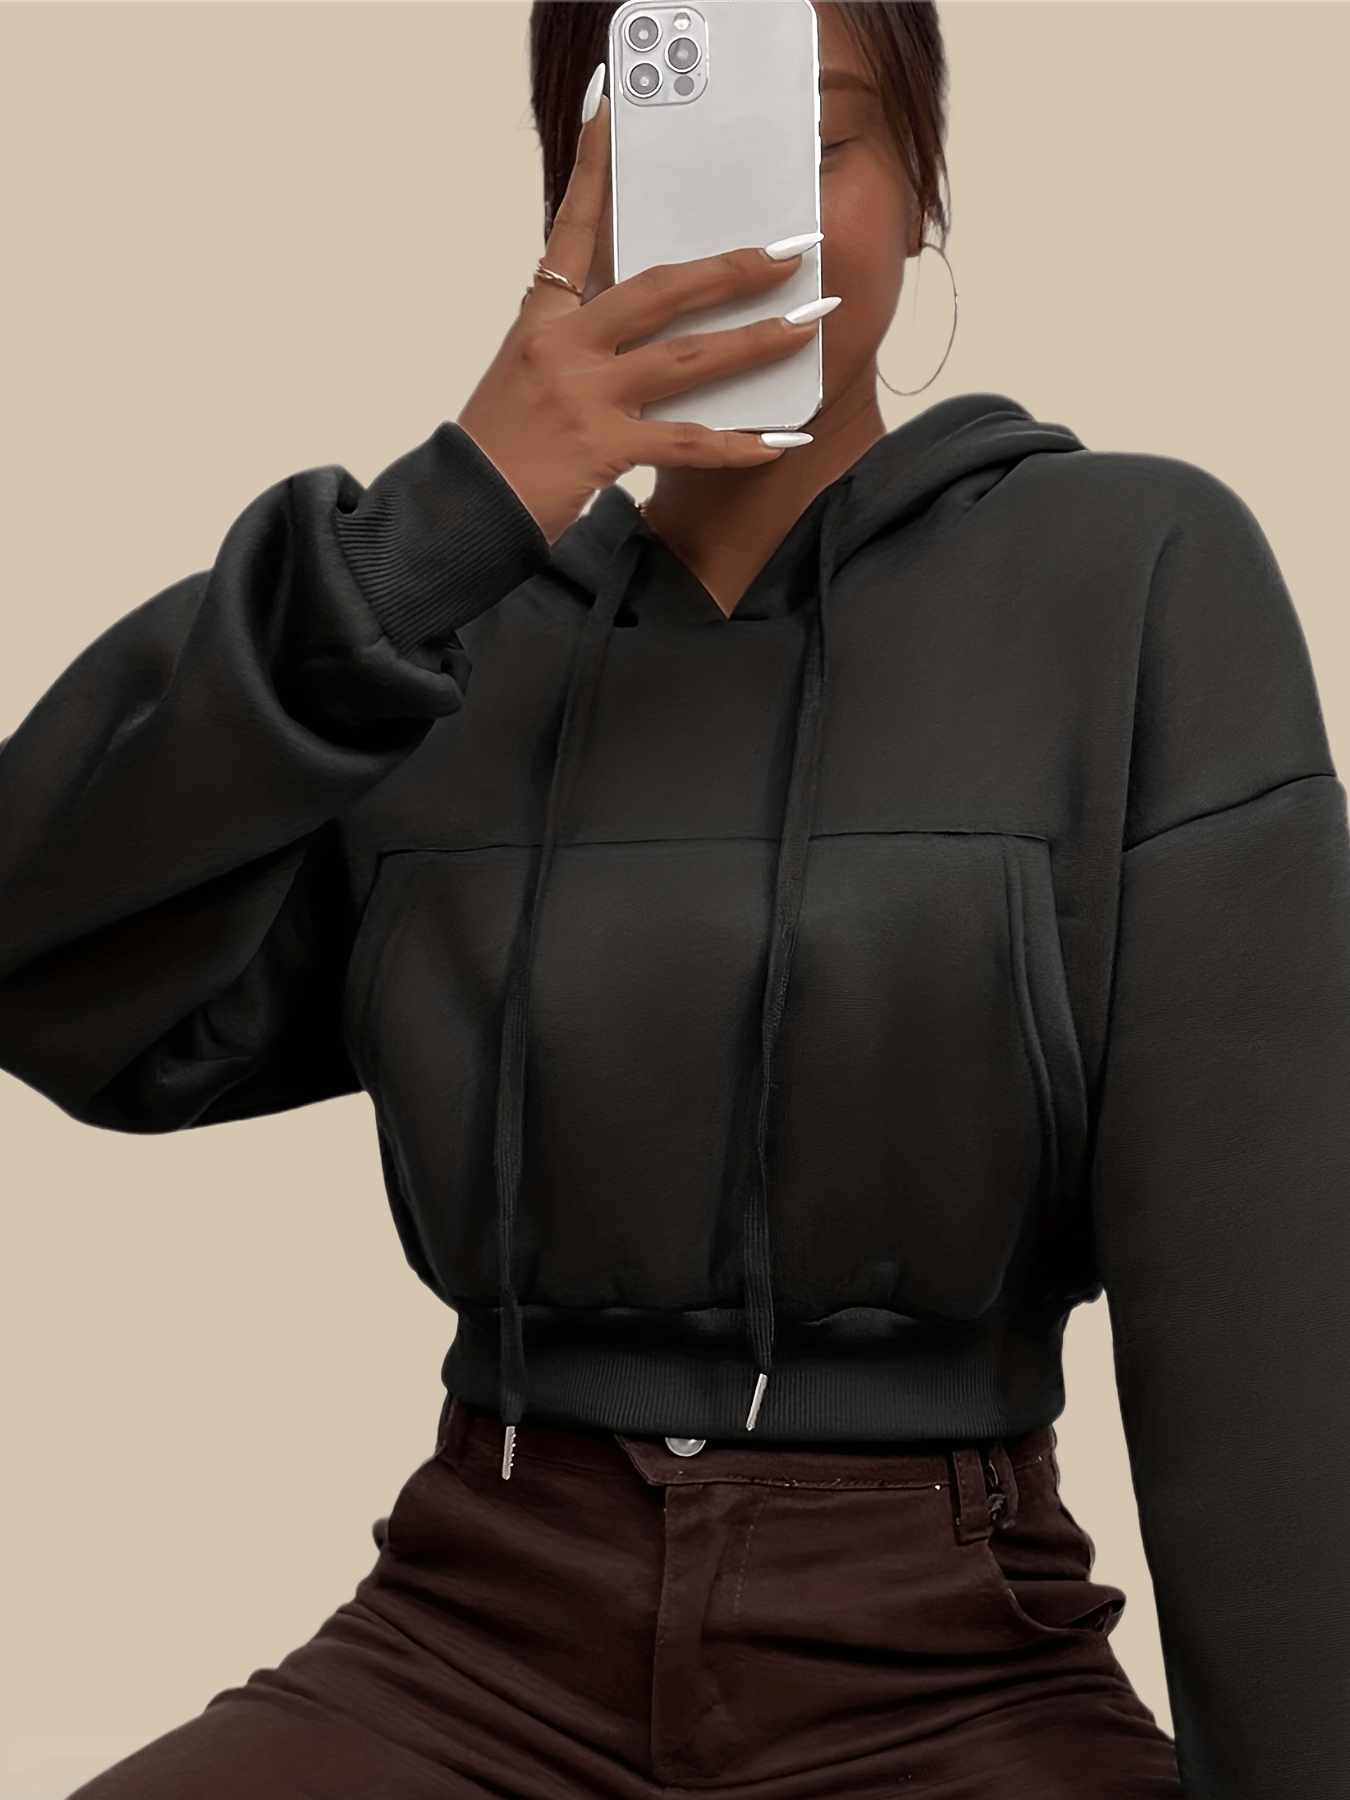 Antmvs Solid Kangaroo Pocket Crop Hoodie, Casual Long Sleeve Drawstring Hoodies Sweatshirt, Women's Clothing